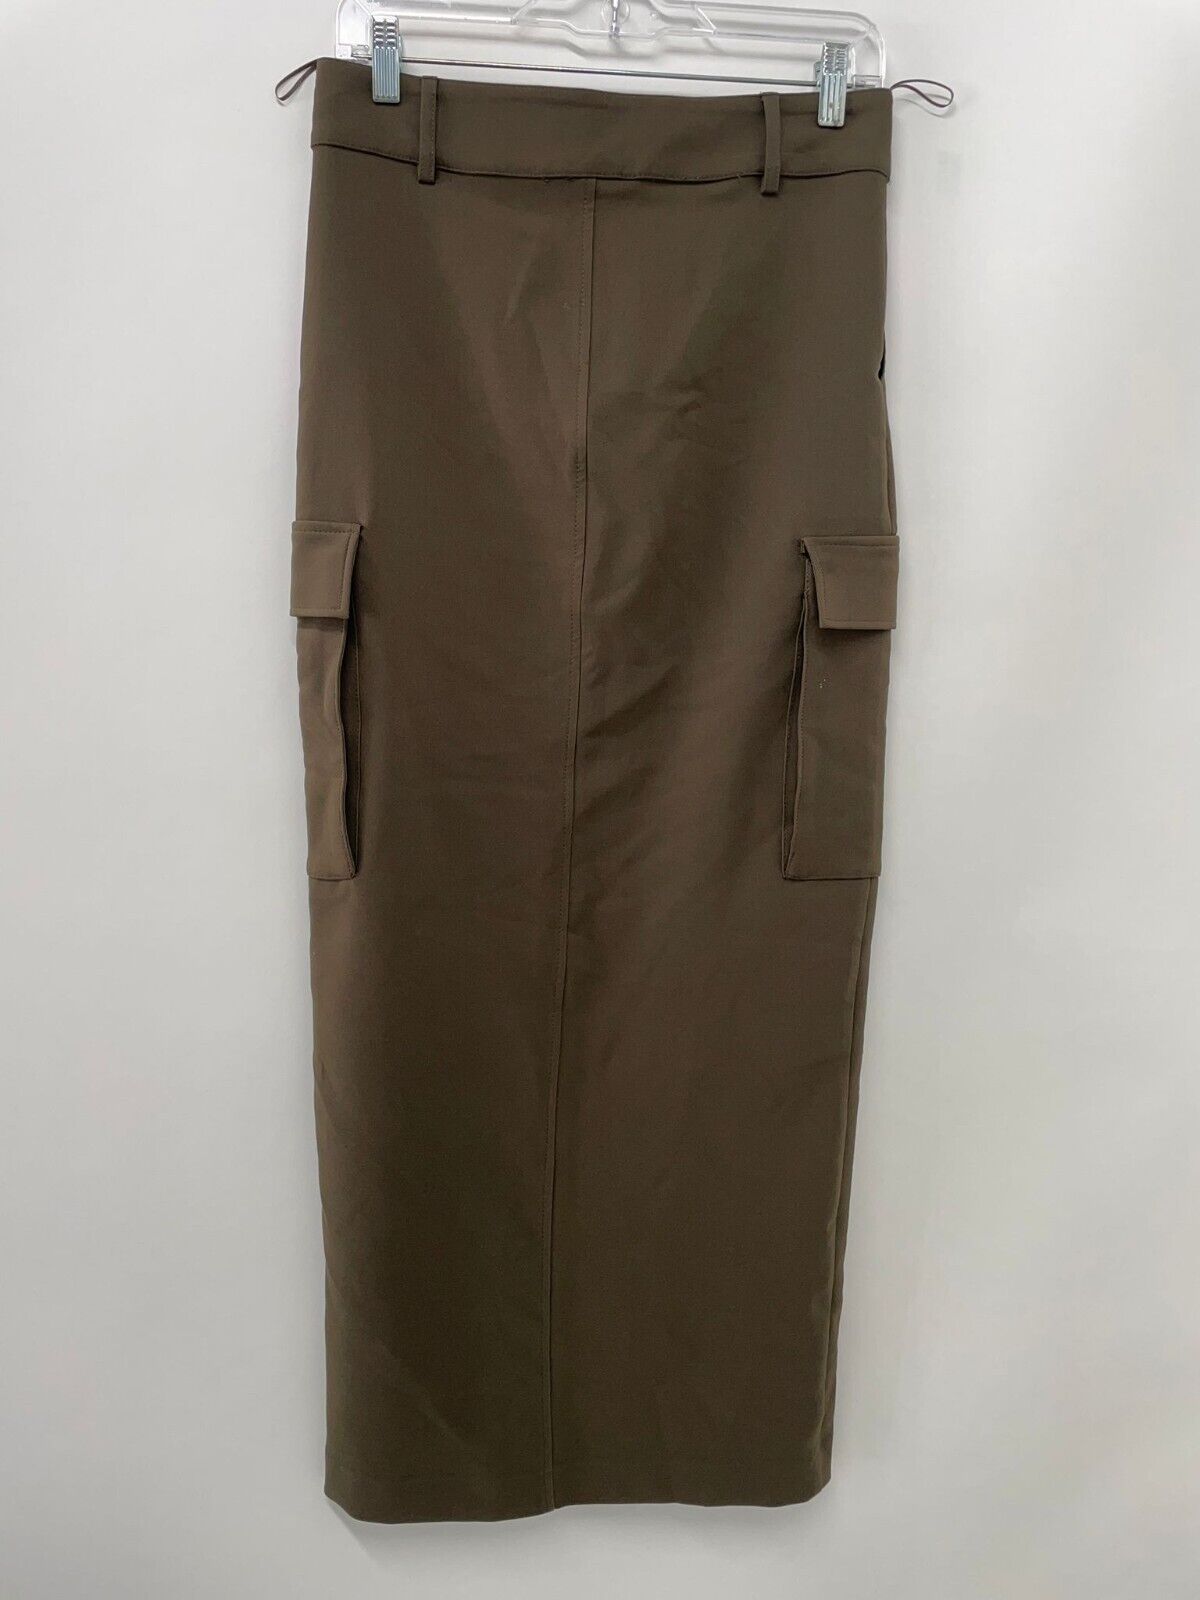 Zara Womens XS 9055/707/505 Long Cargo Skirt Pencil Maxi High Slit Brown